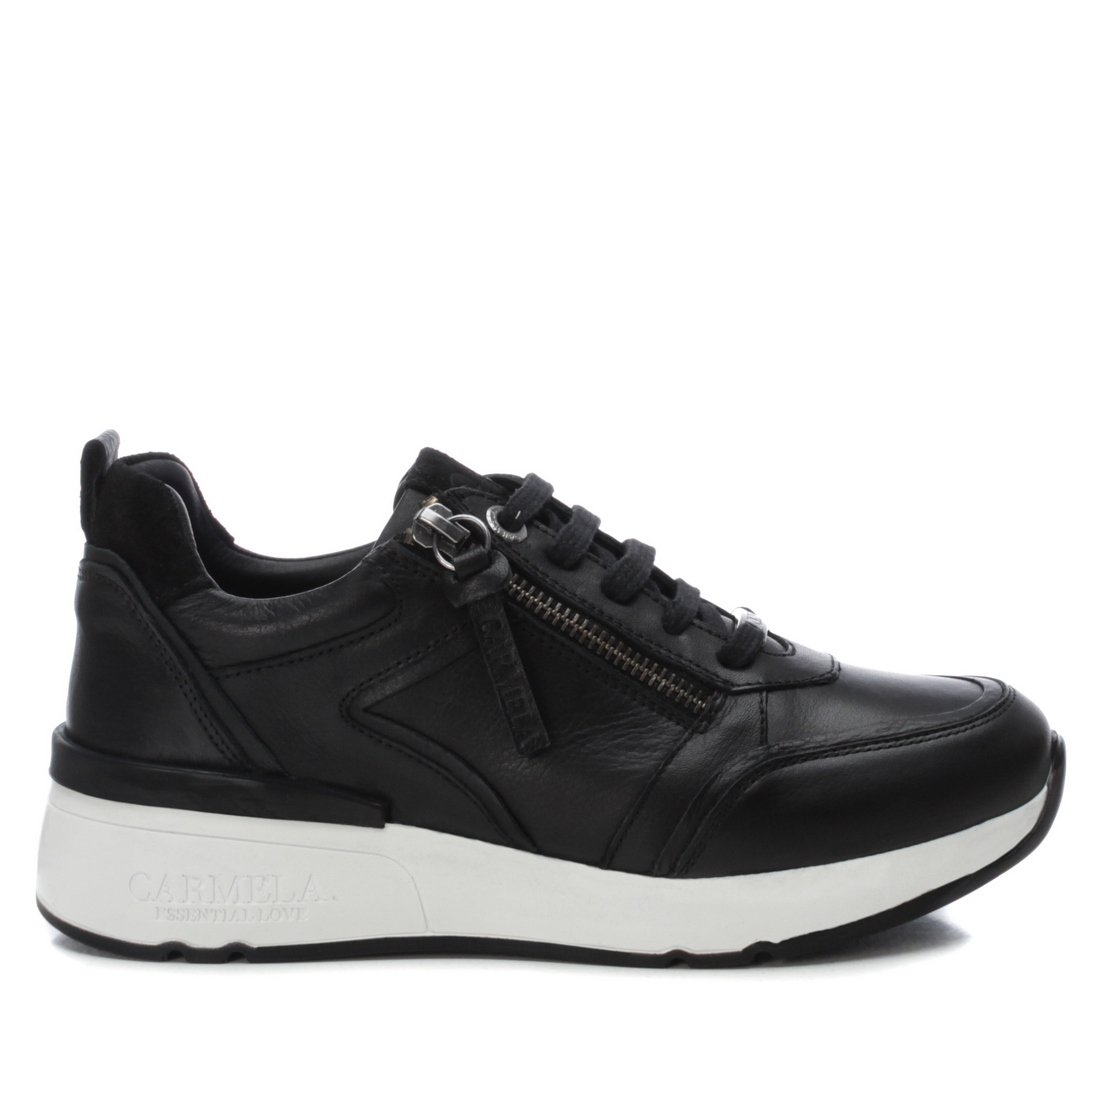 Sneaker Carmela 160208 - negro - 